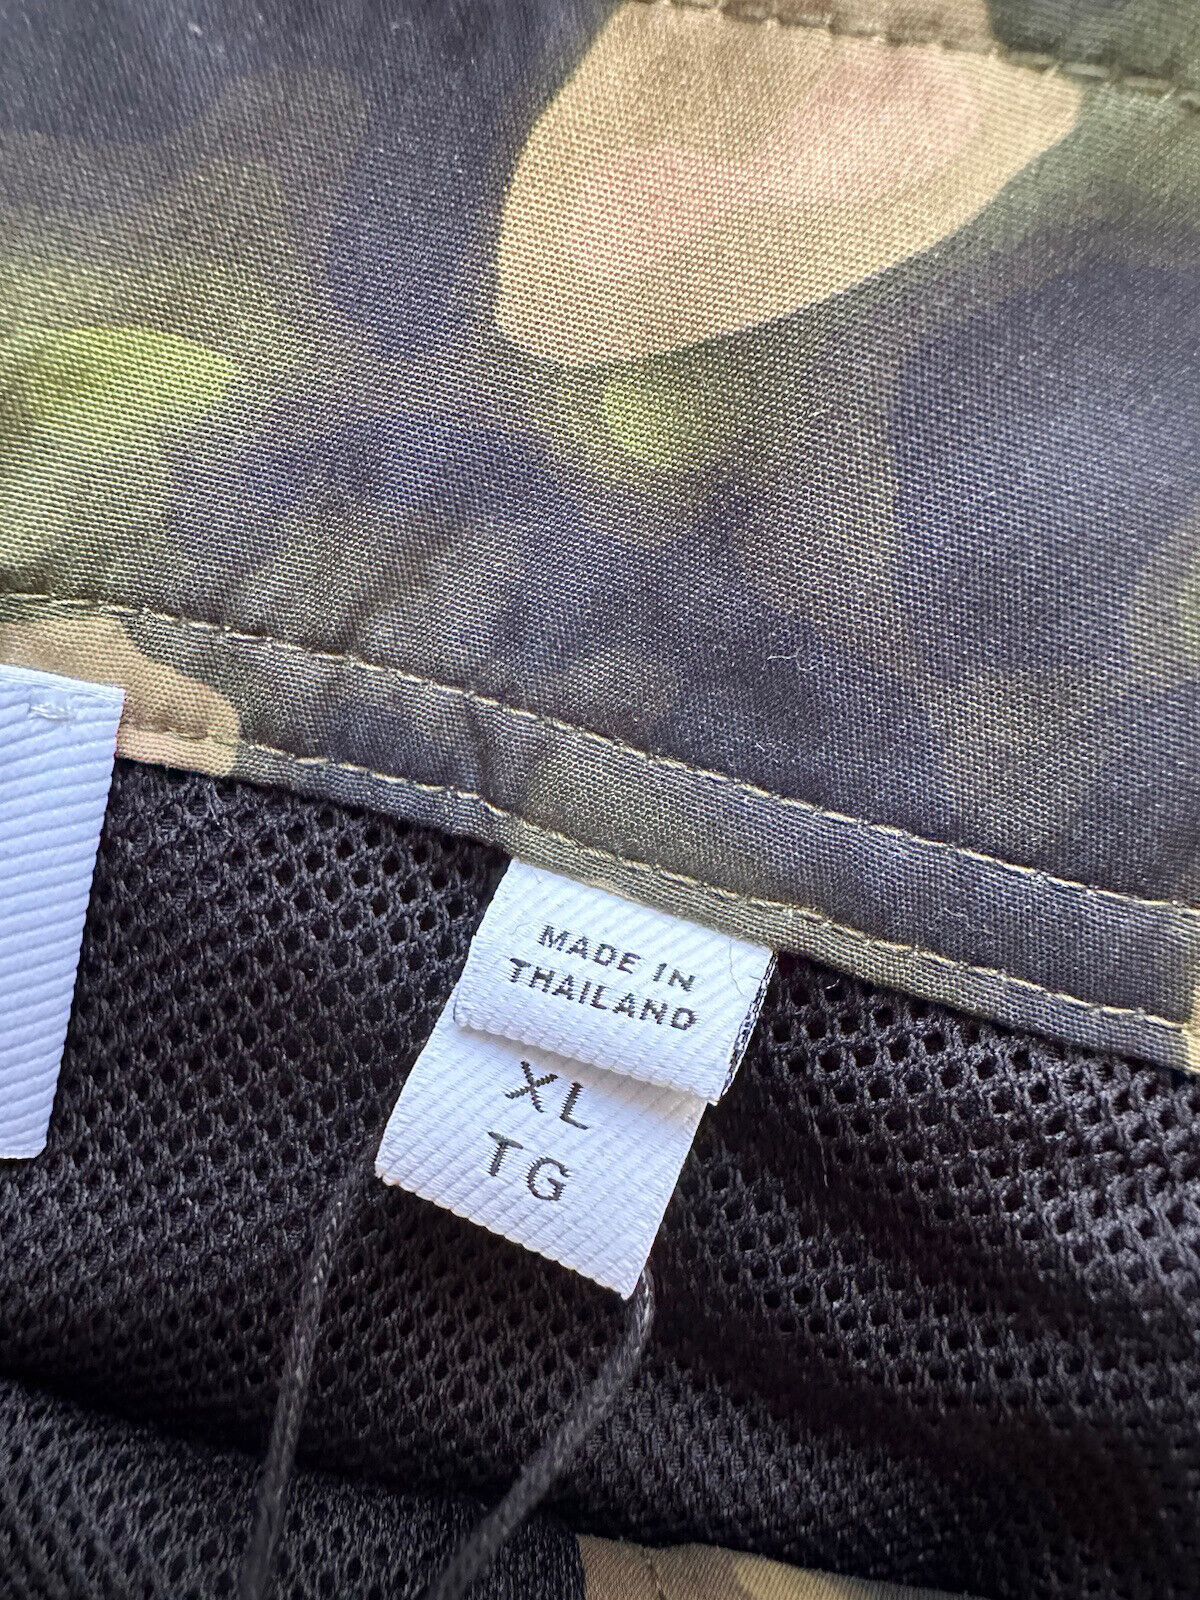 СЗТ $480 Burberry Breton Мужские камуфляжные шорты-боксеры для плавания темно-зеленого папоротника XL 8042583 